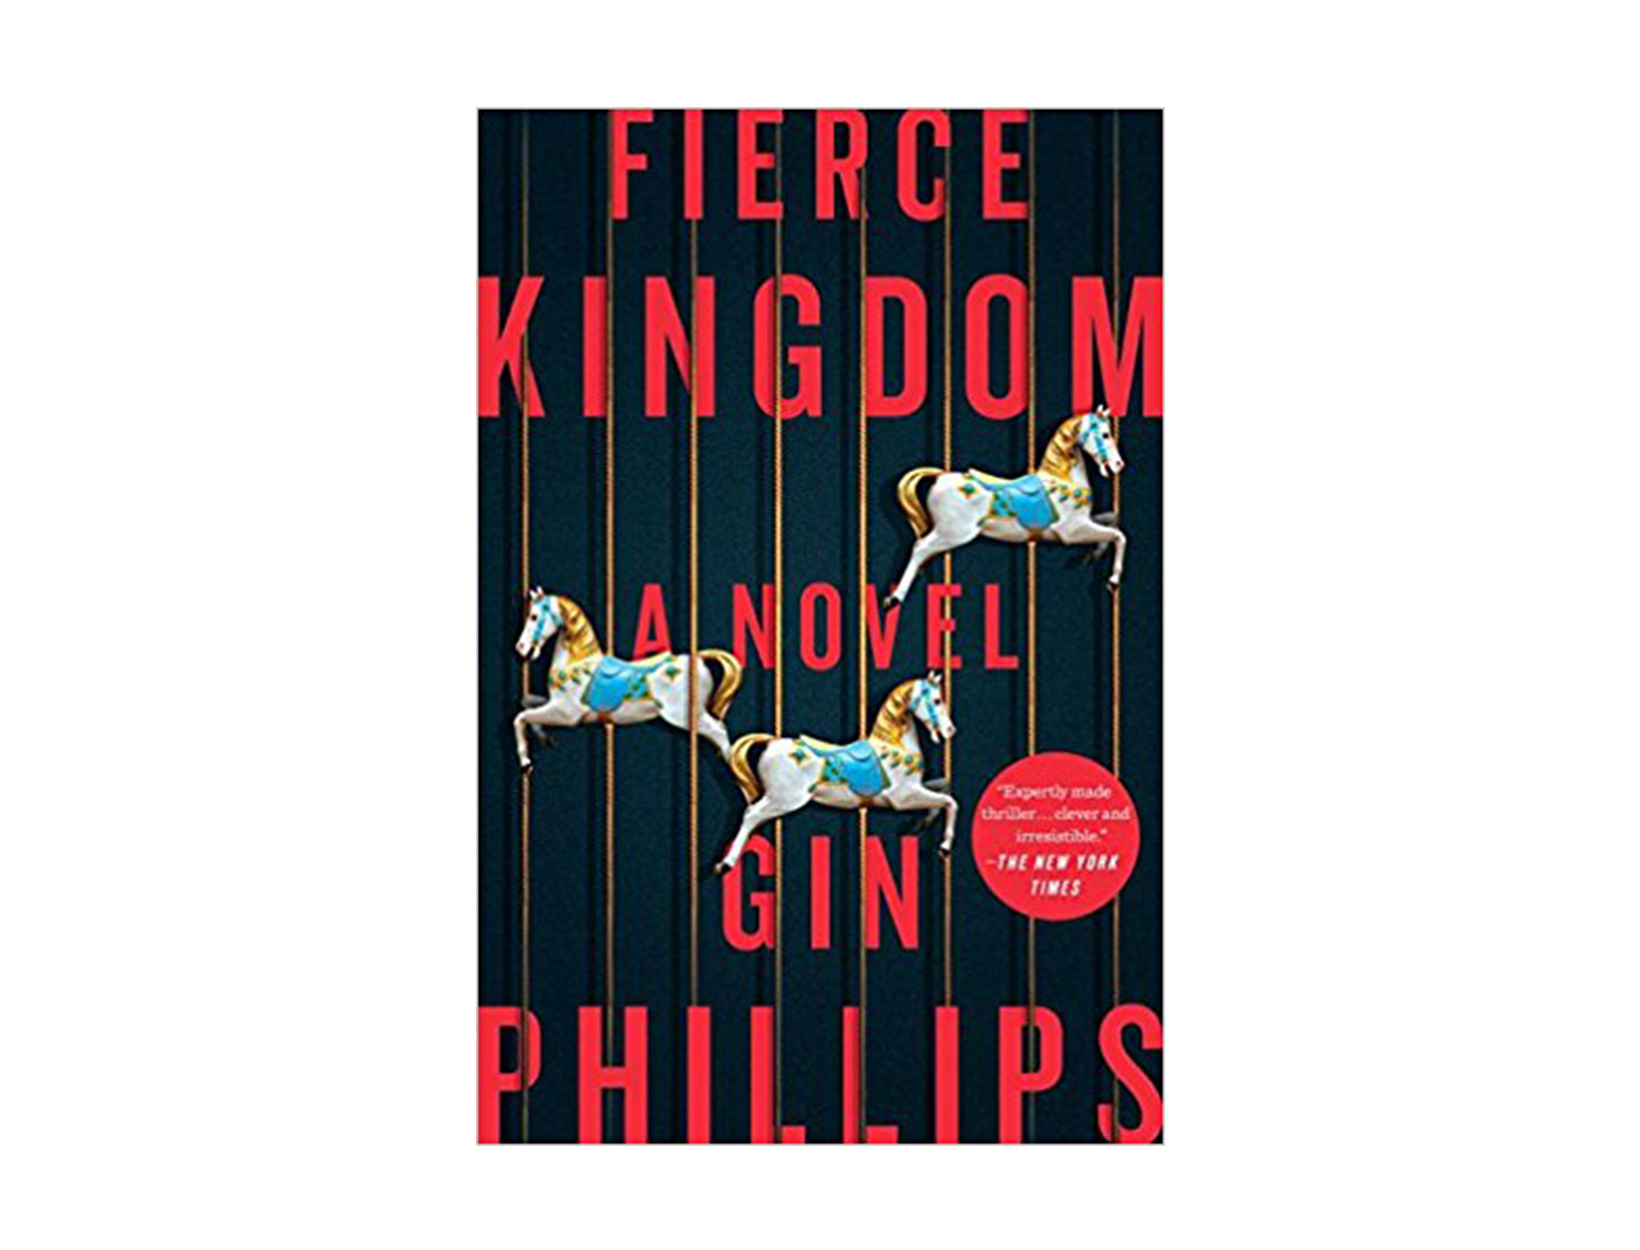 Fierce Kingdom by Gin Phillips